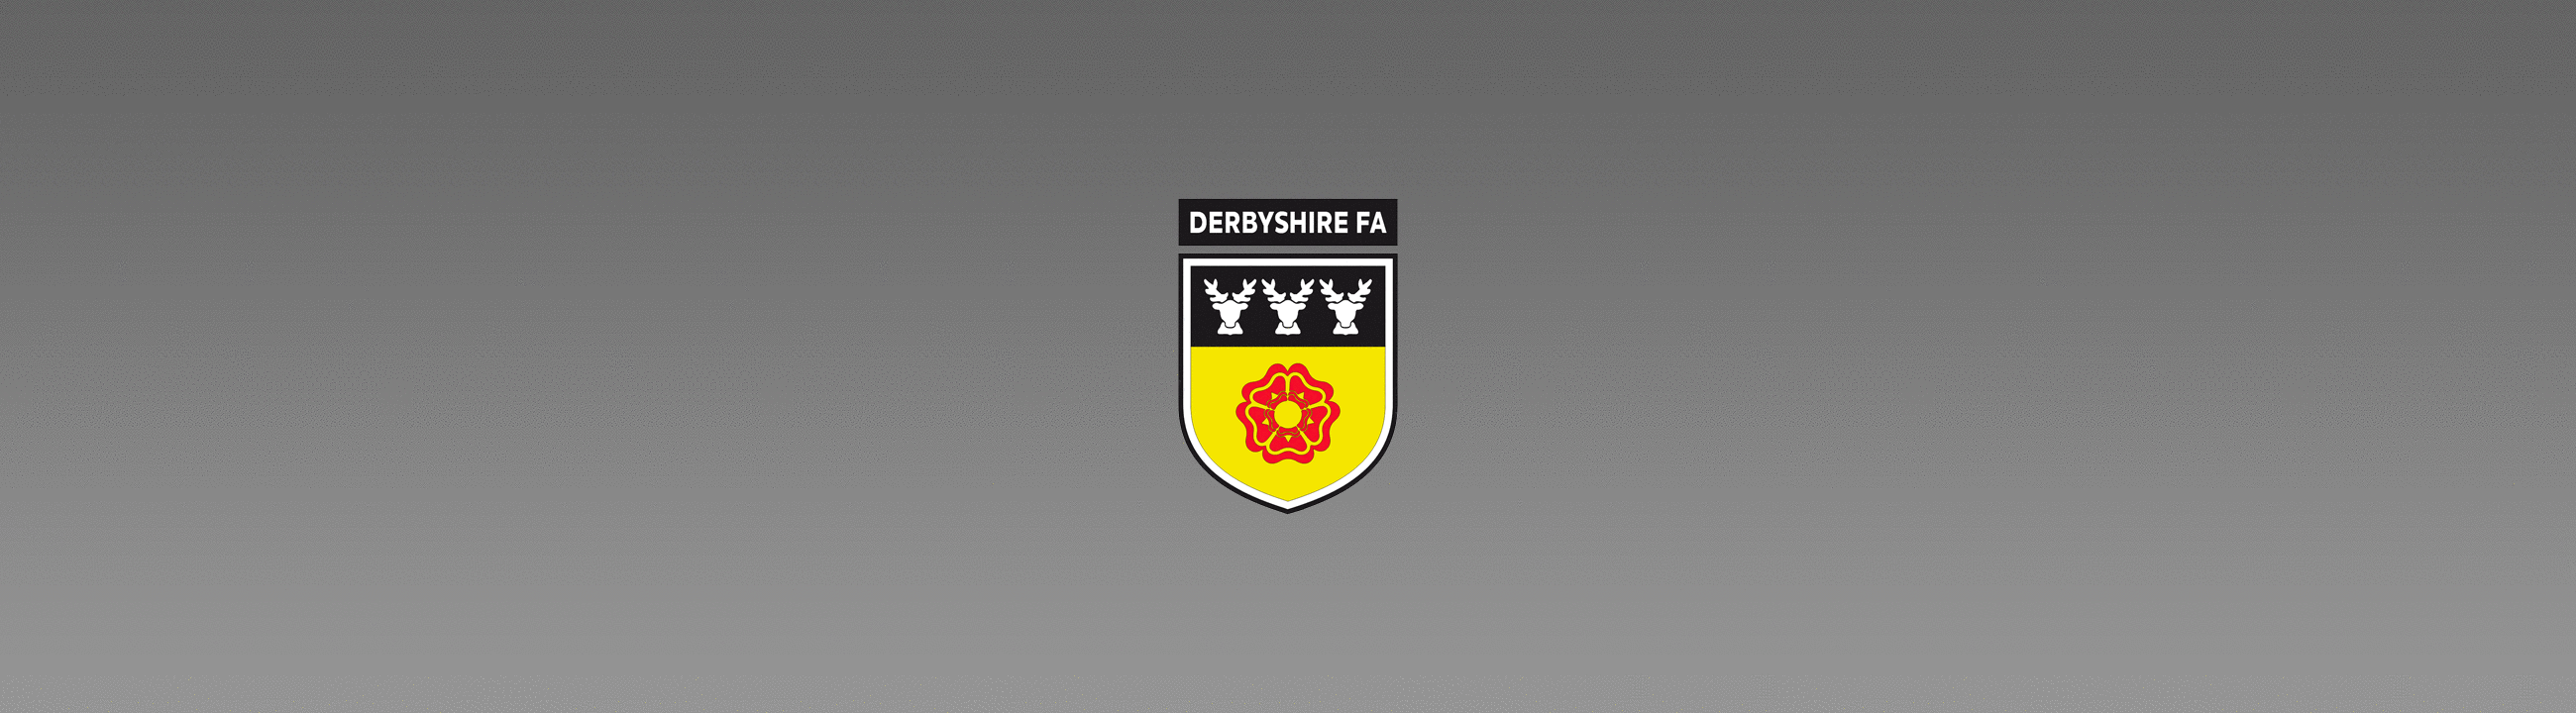 Derbyshire FA